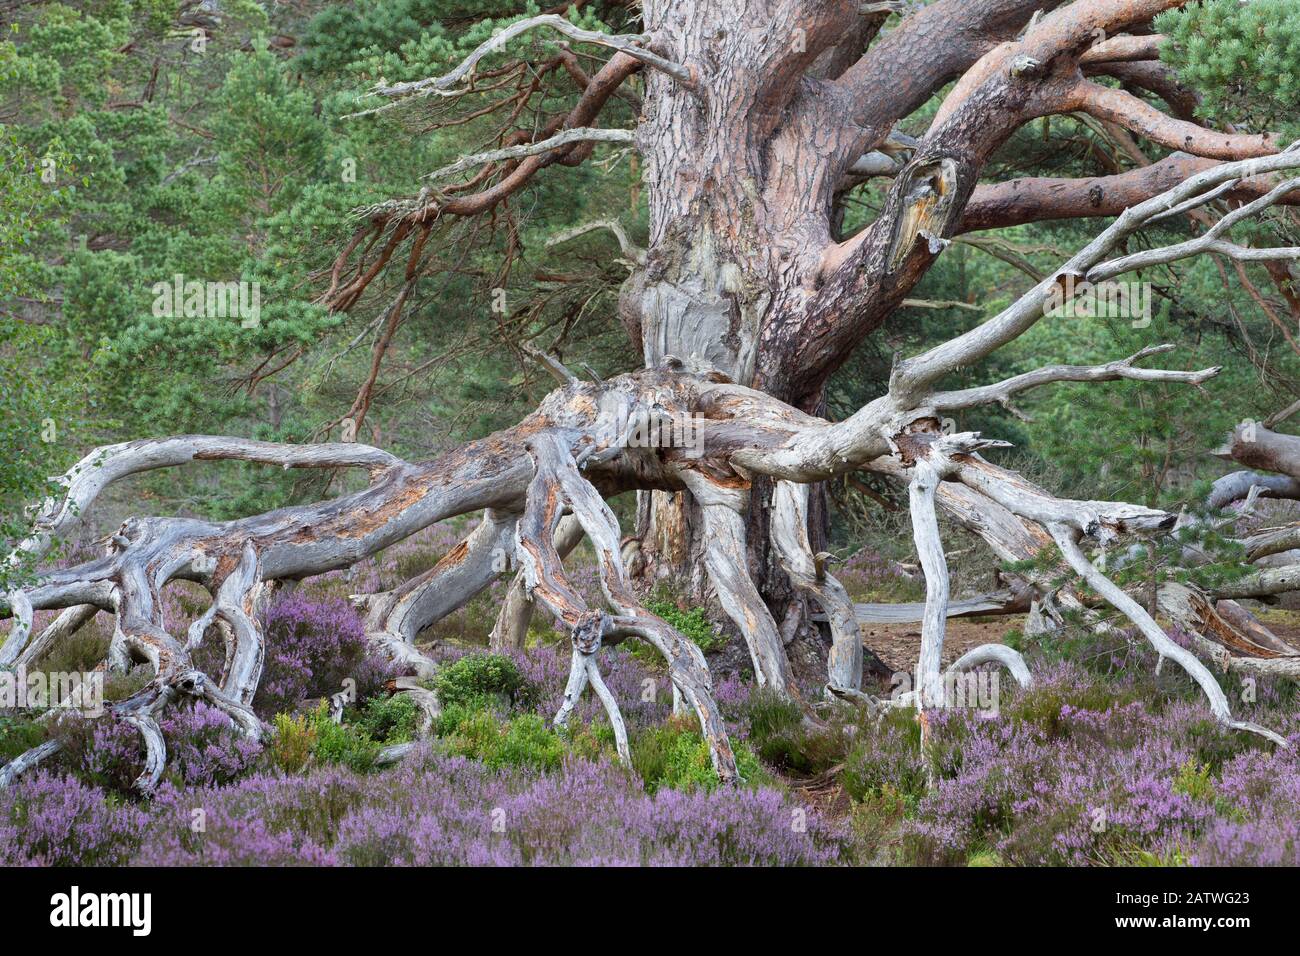 PIN écossais antique (Pinus sylvestris) parmi floraison bruyère commune / Ling (Calluna vulgaris). Forêt De Rothiemurchus, Parc National De Cairngorms, Écosse, Royaume-Uni. Banque D'Images